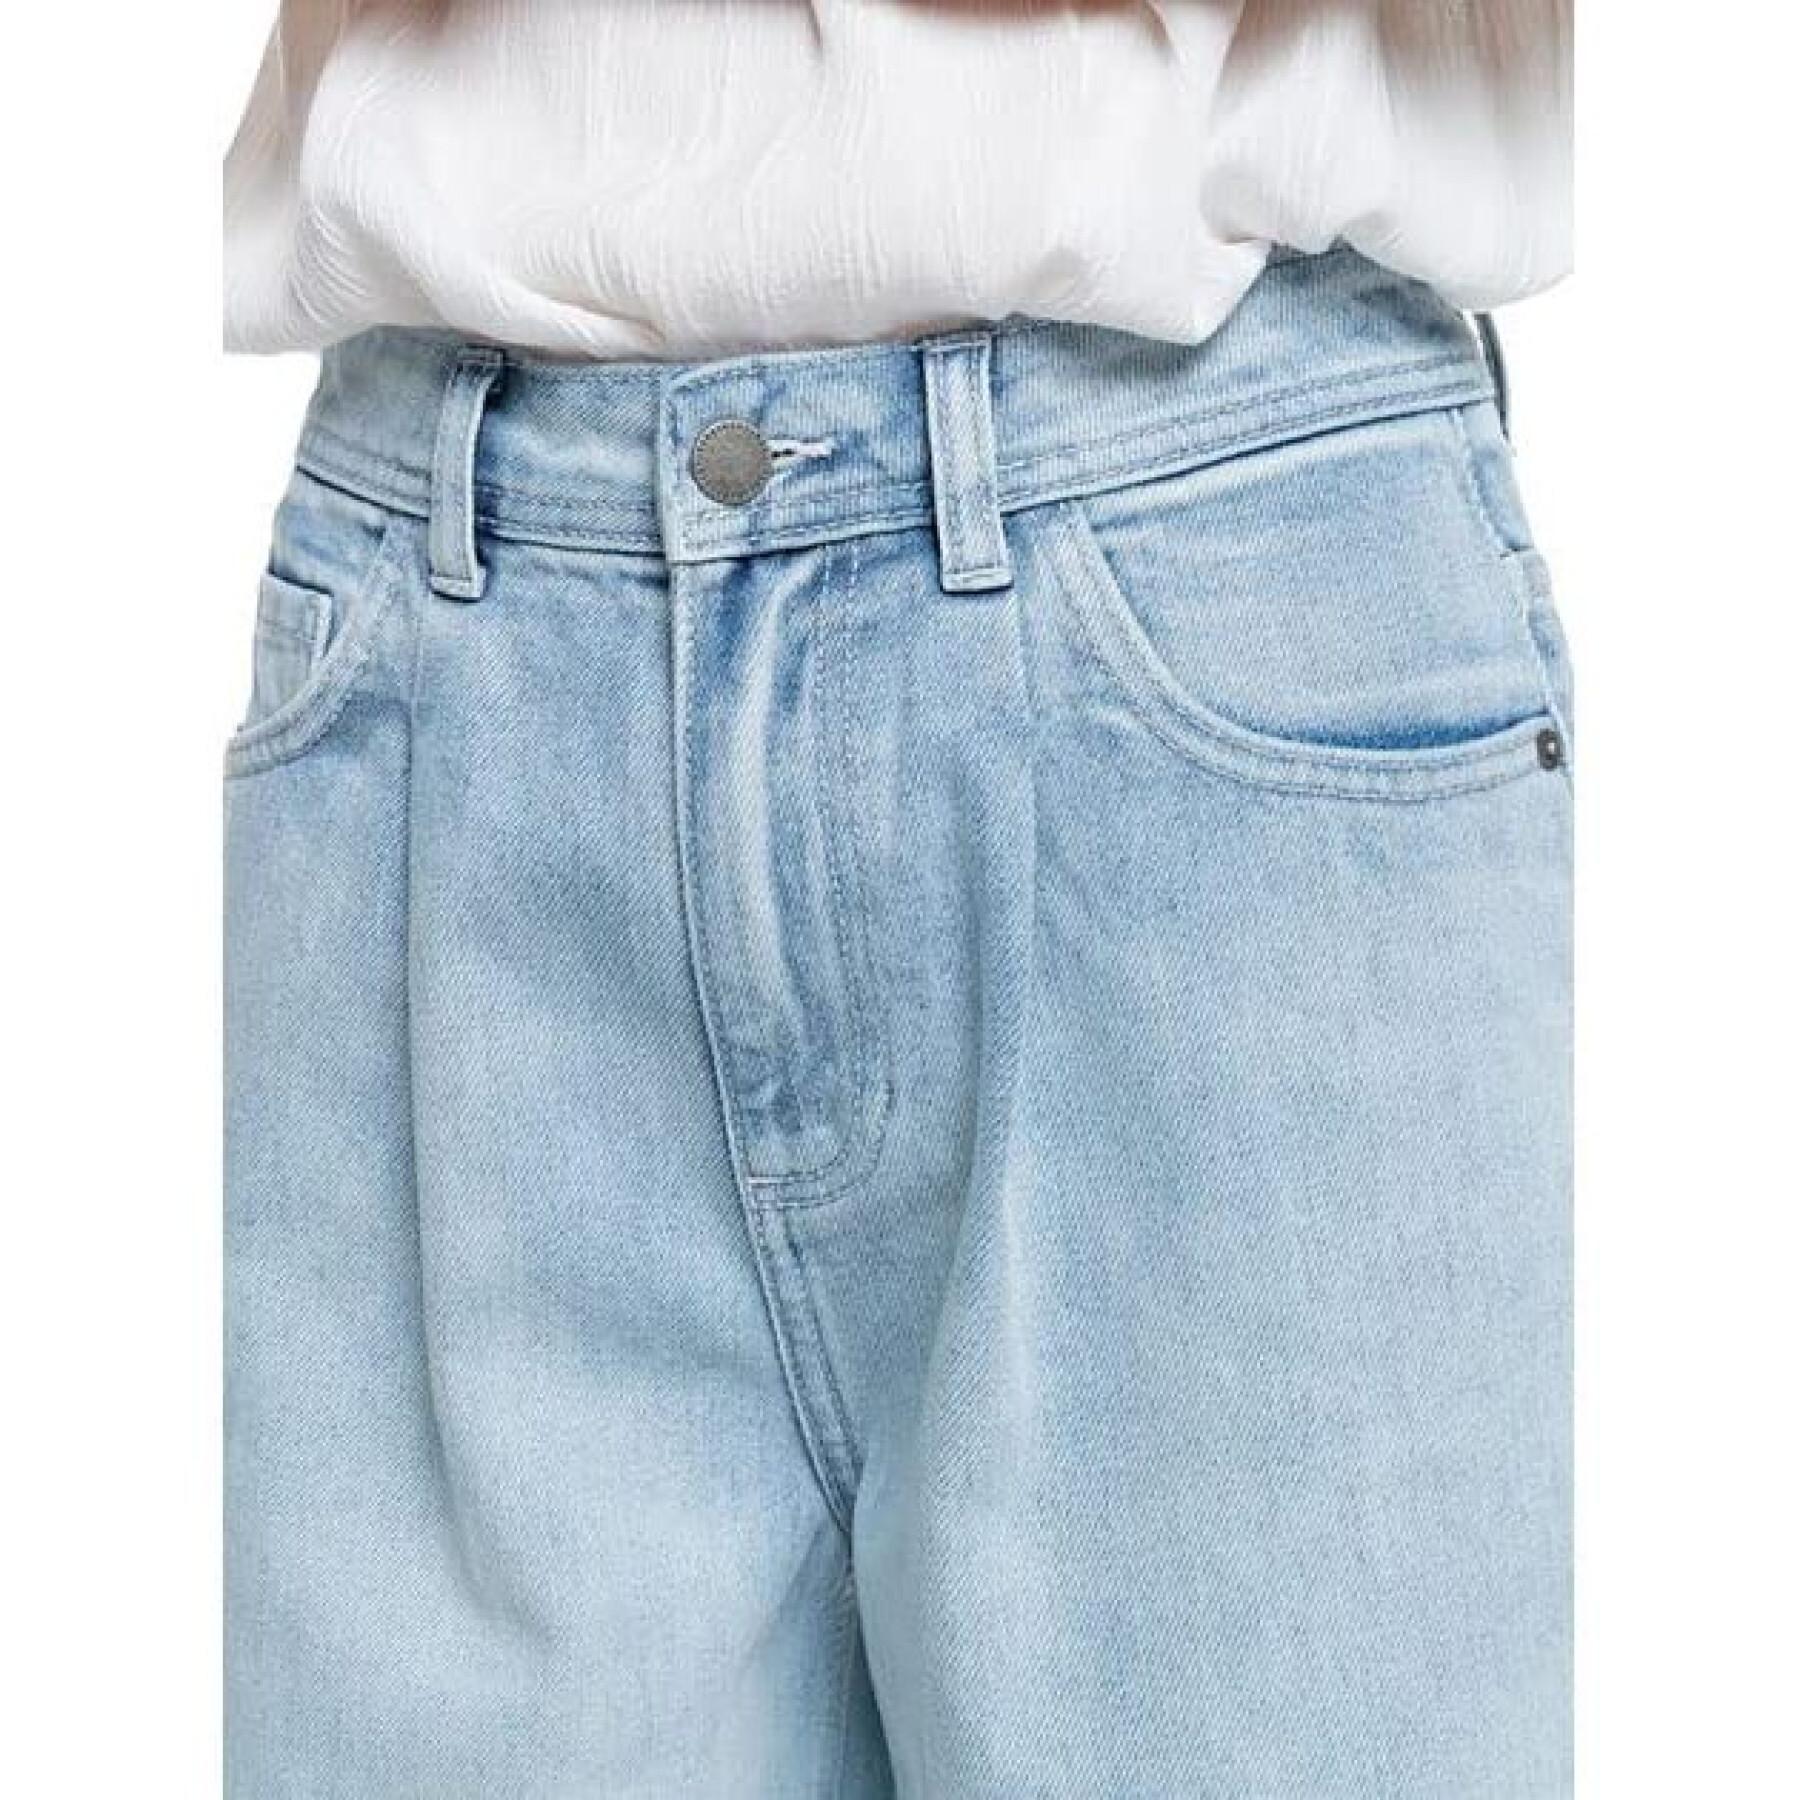 Jeans för kvinnor Roxy Opposite Way High